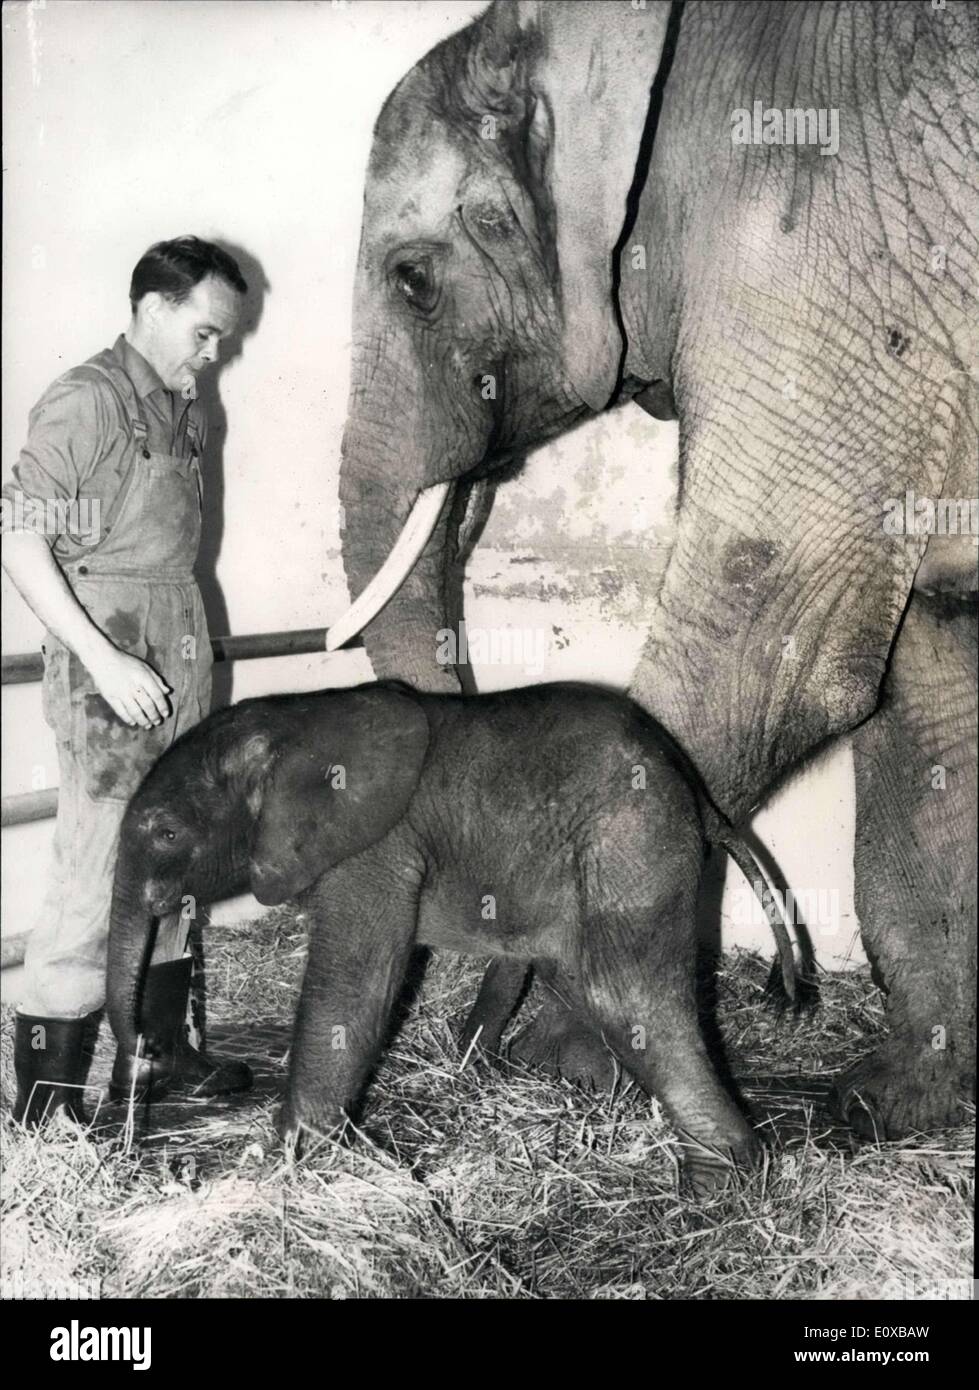 Gen 15, 1966 - Per la terza volta nella storia; un elefante africano è nato nel giardino zoologico di Basilea. Questa è la terza volta soltanto che un elefante africano è nato al di fuori dell Africa. Mostra fotografica di mamma orgogliosa elephant con le sue due ore di vecchio figlia. Foto Stock